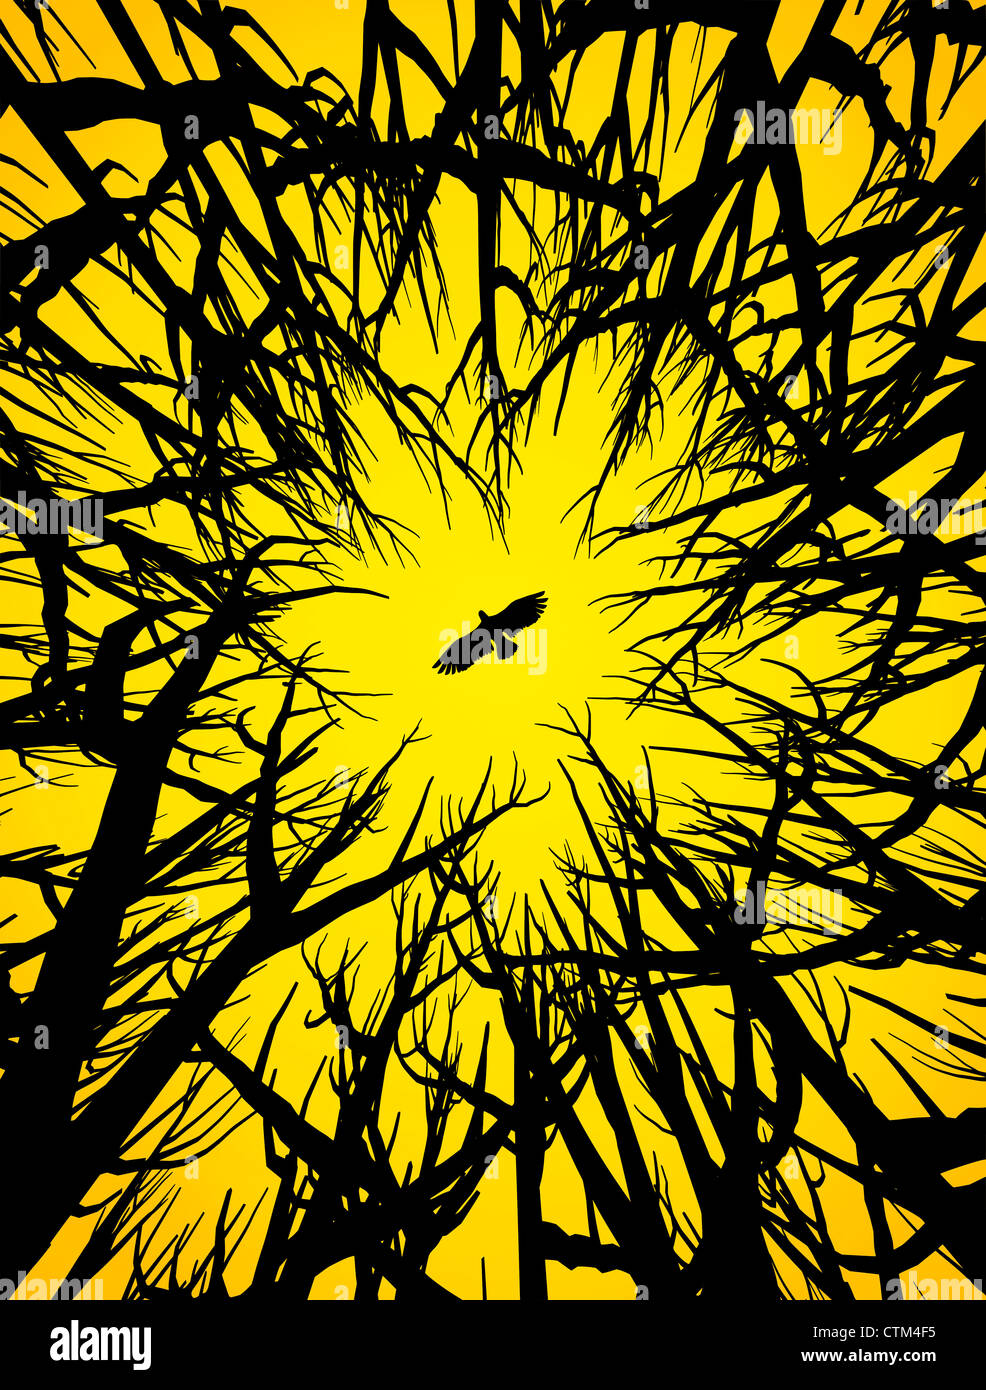 Illustration (vecteur) de style silhouette d'arbres et d'un oiseau de proie volant sous ciel jaune Banque D'Images